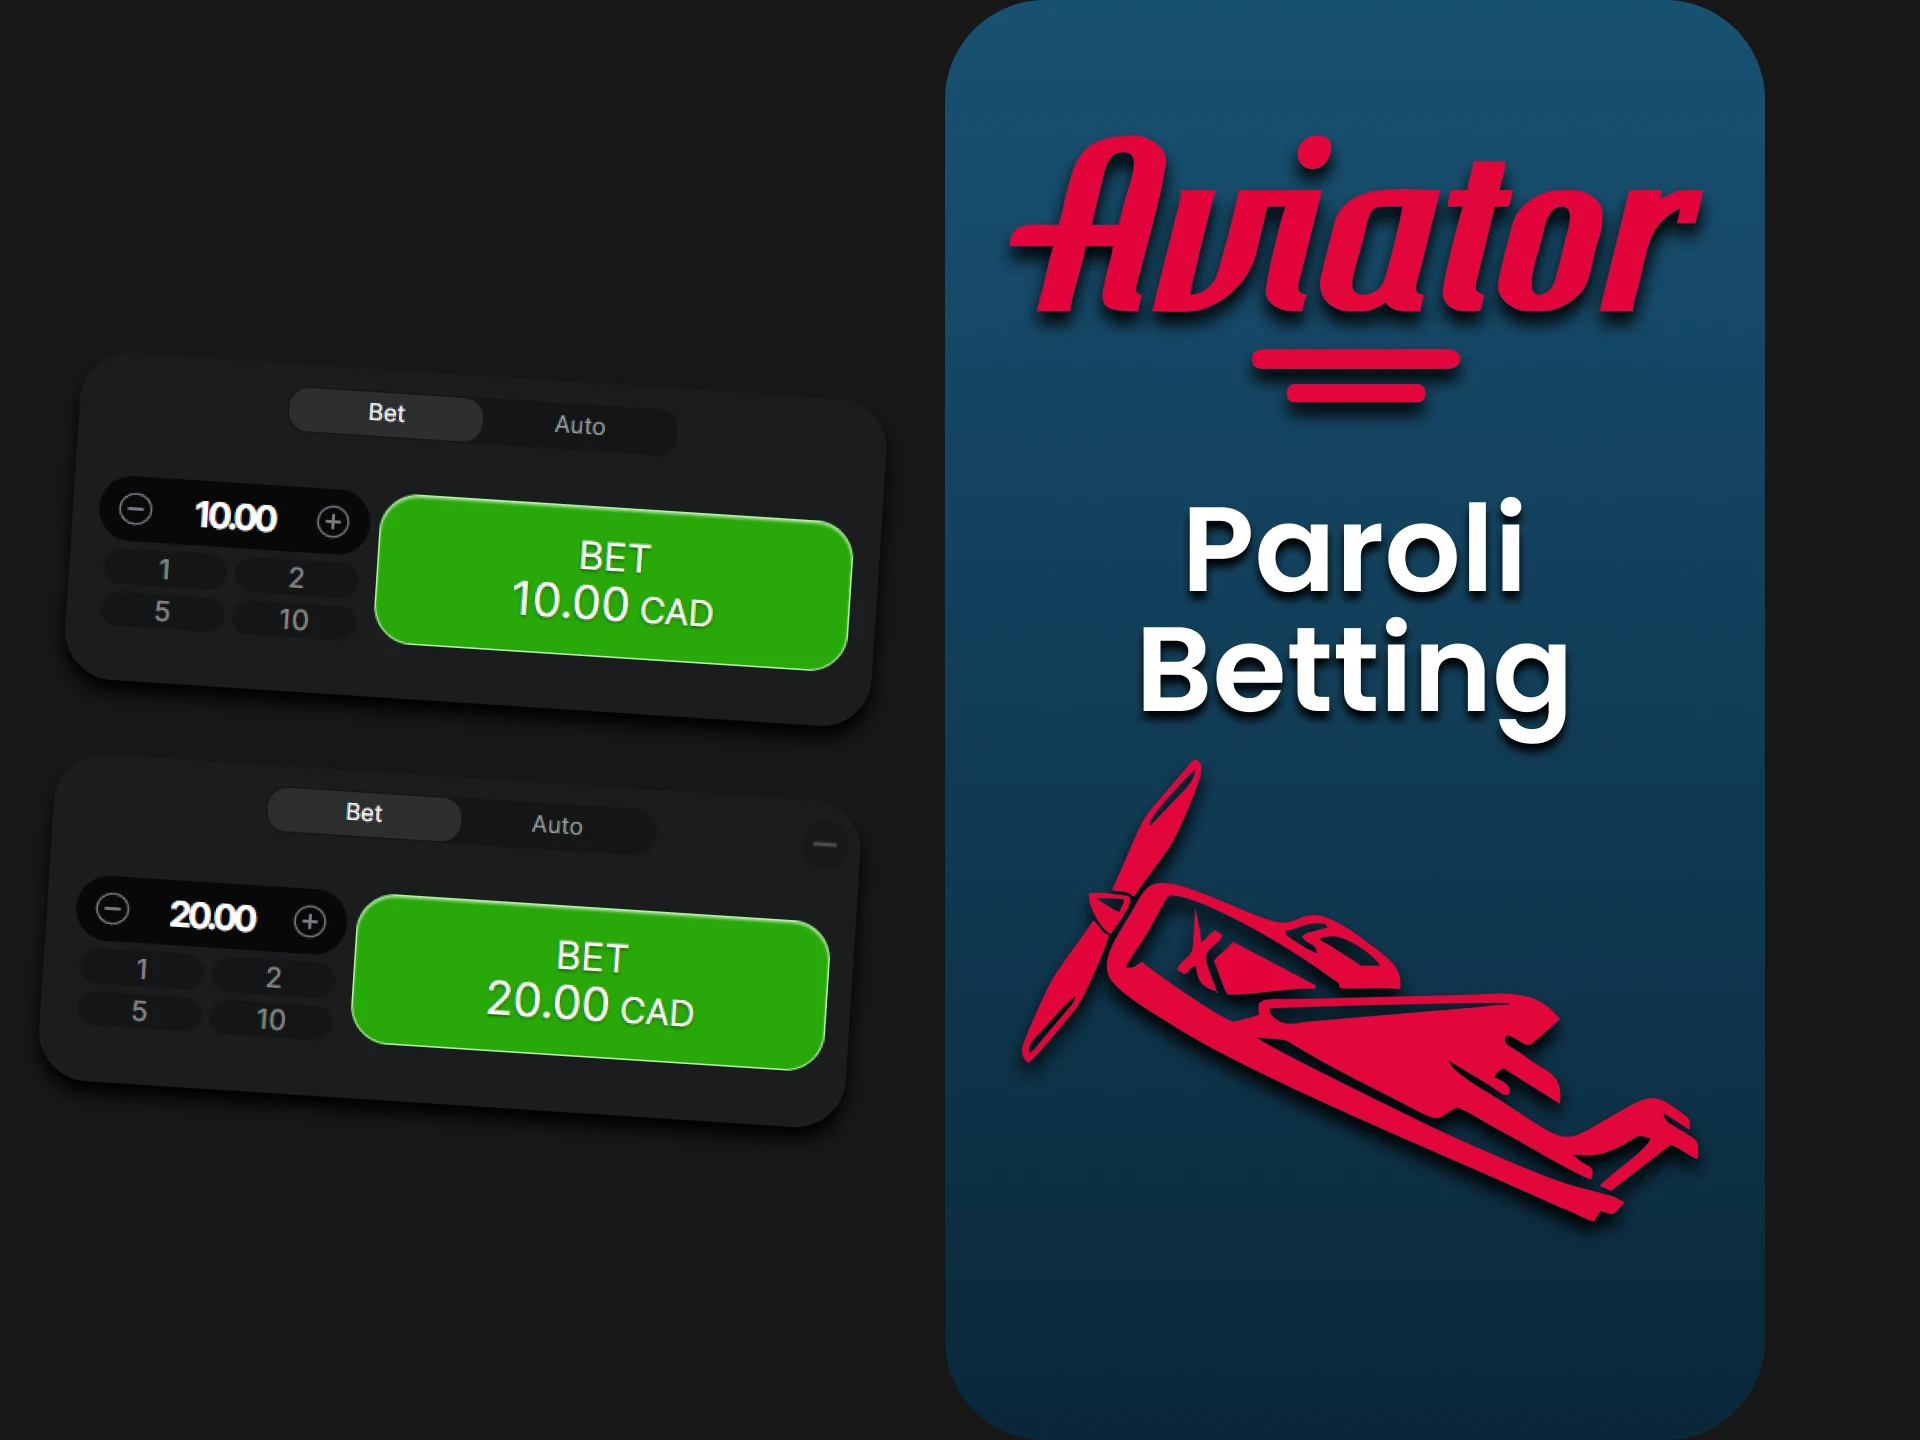 Learn Paroli Betting to win in the Aviator game.